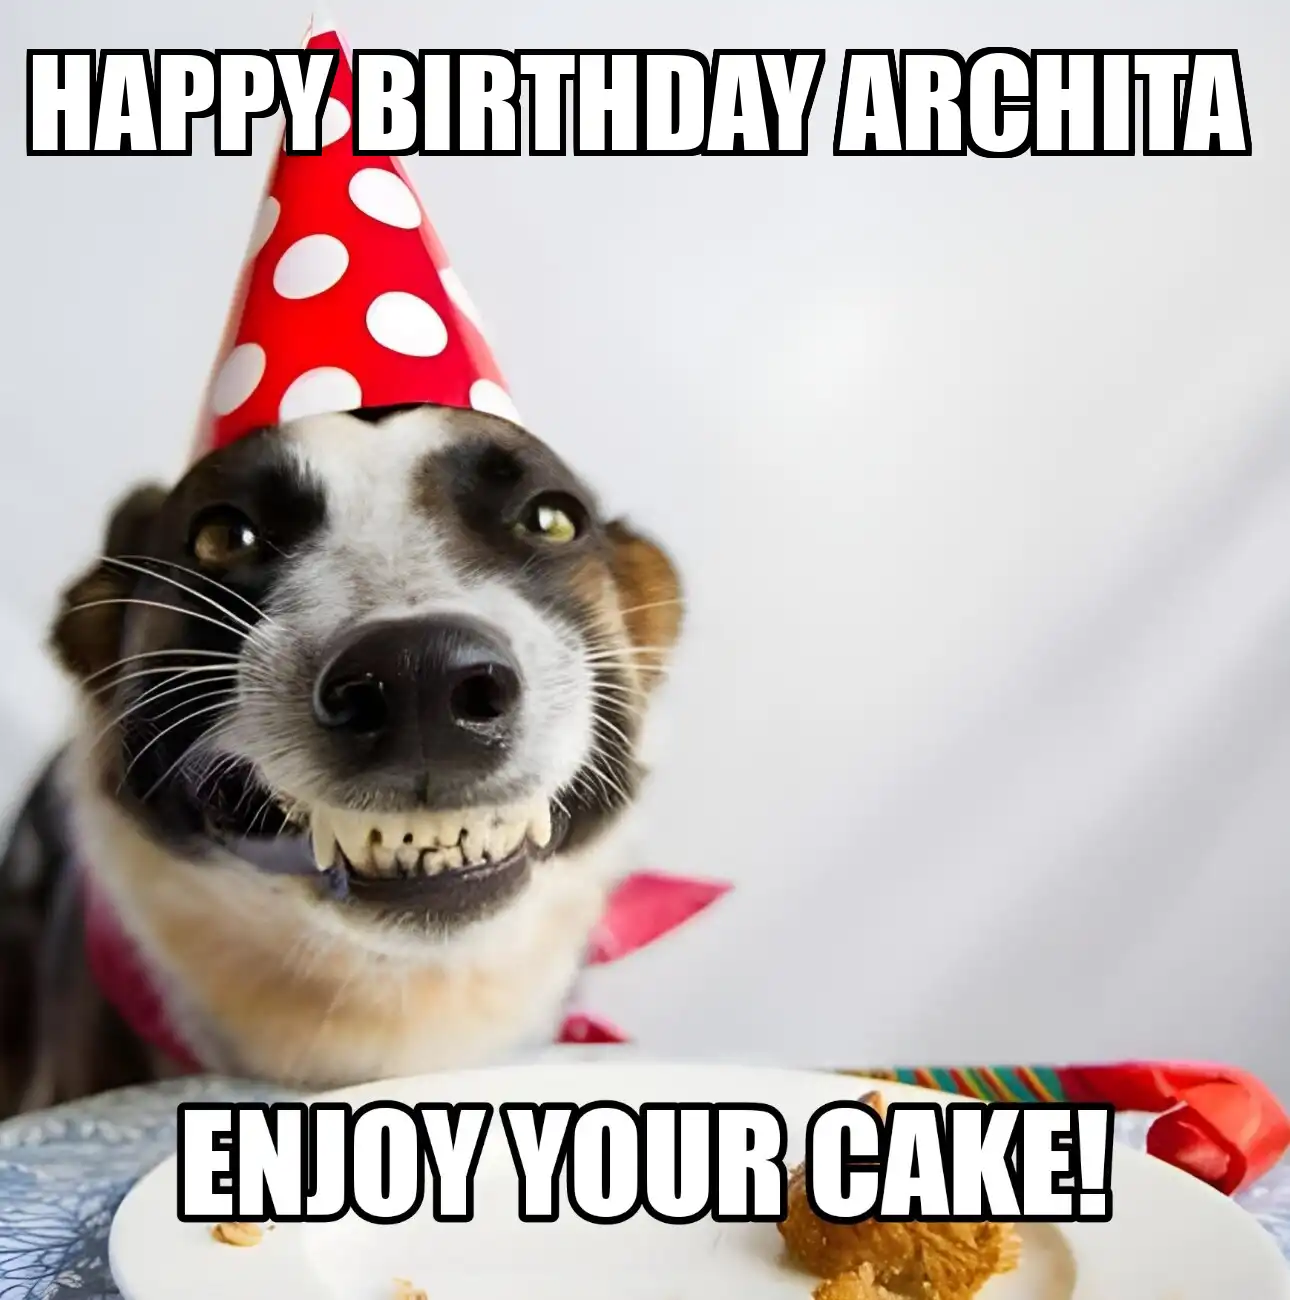 Happy Birthday Archita Enjoy Your Cake Dog Meme